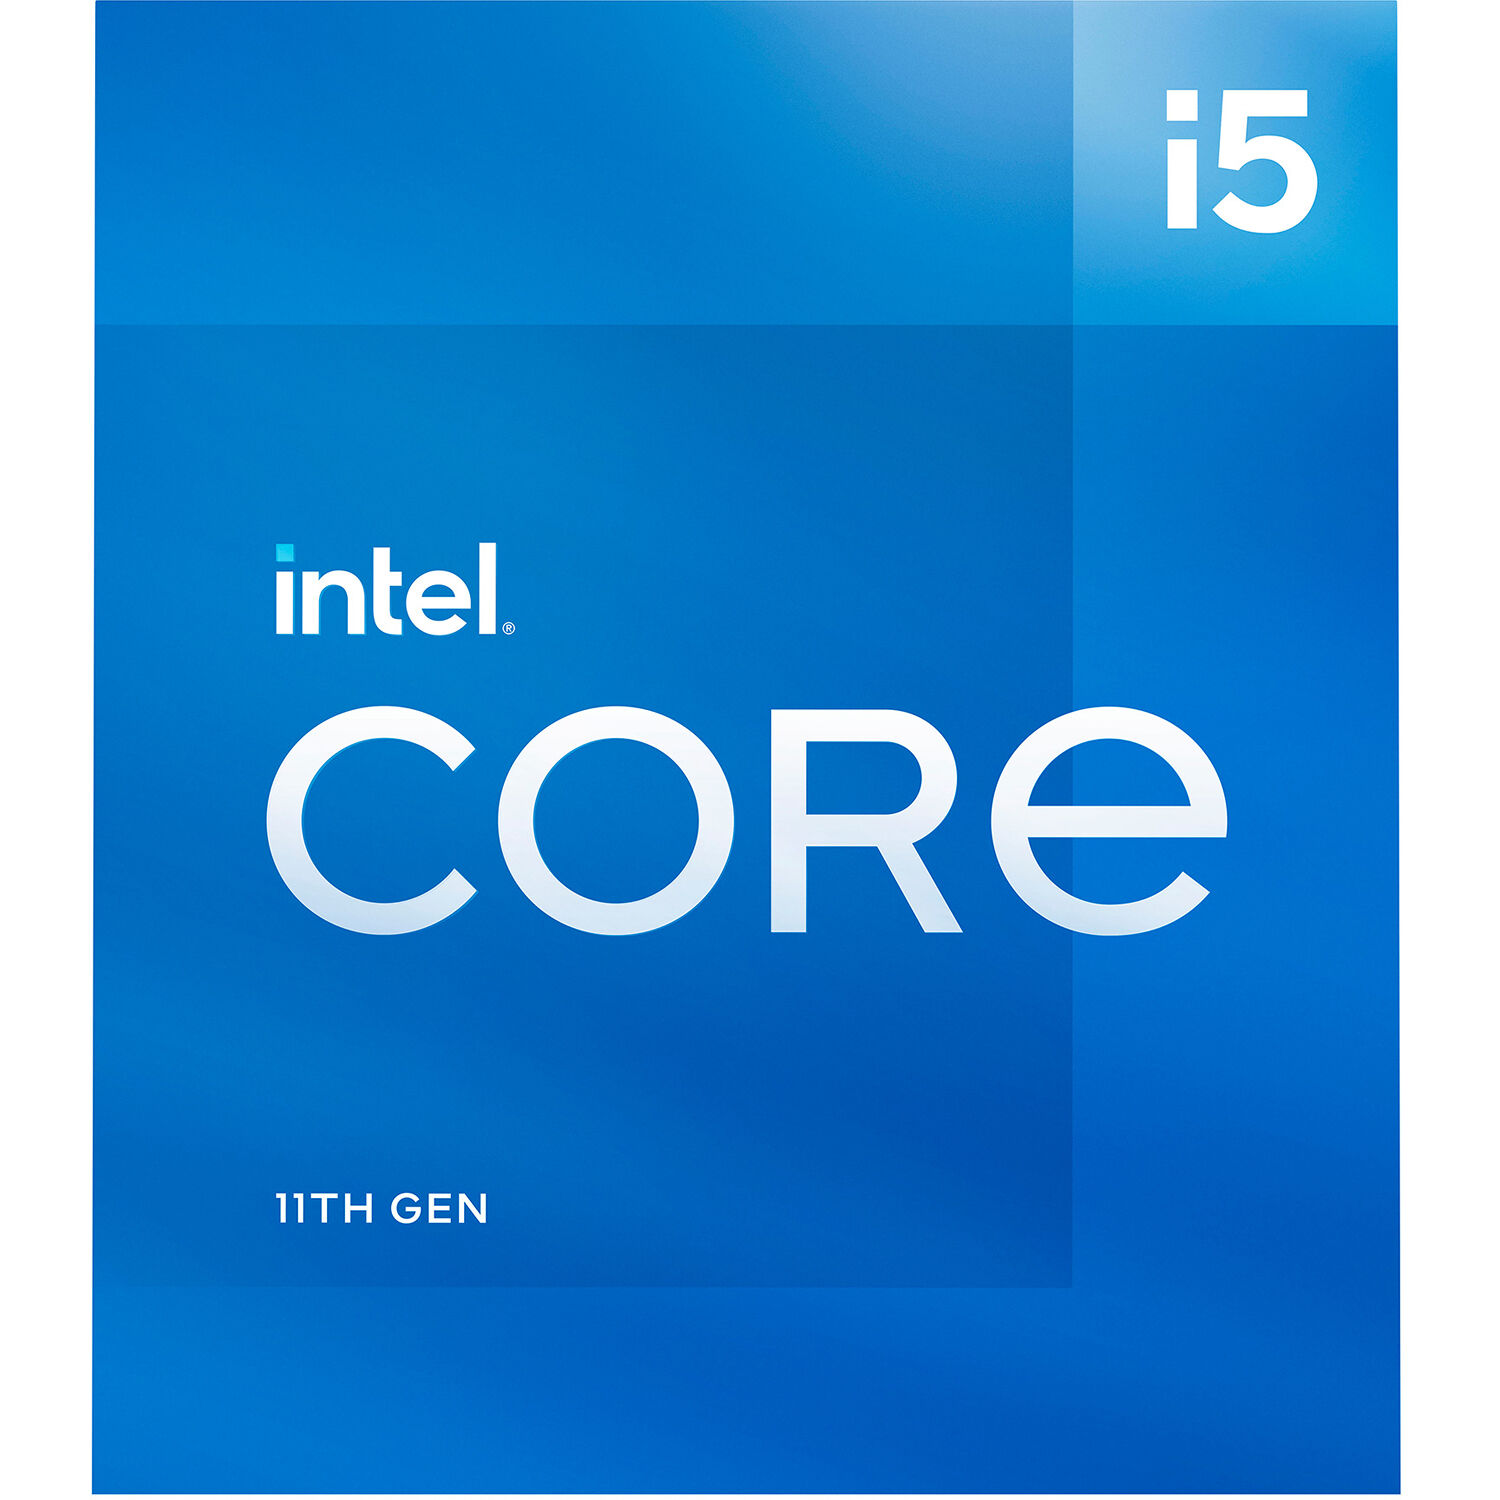 CPU Intel Core i5